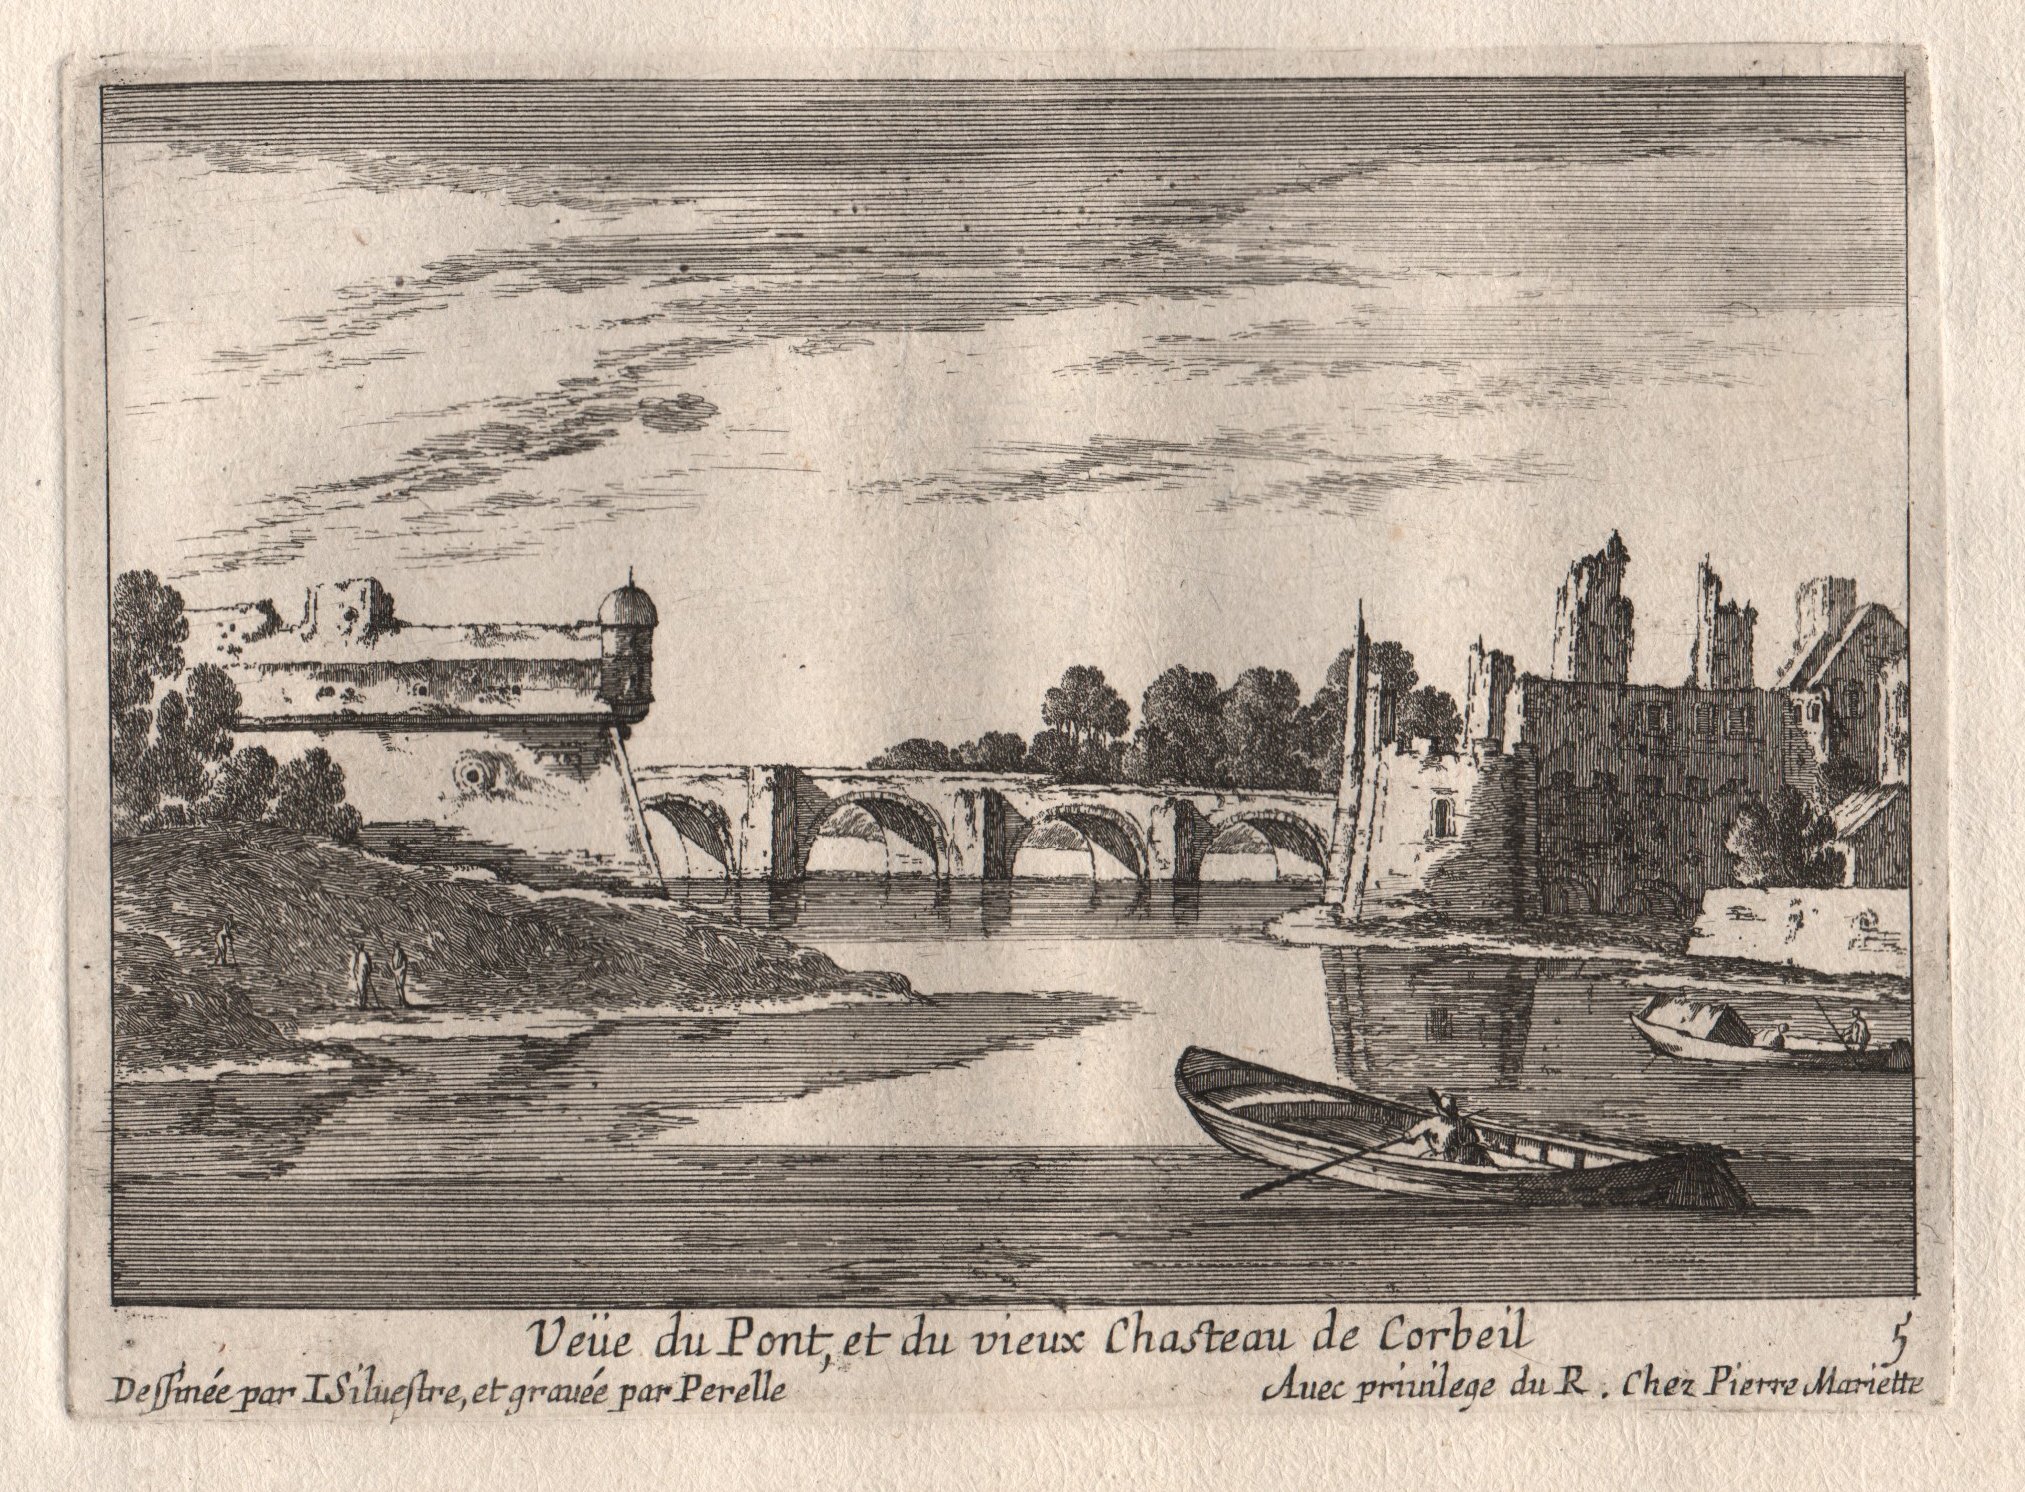 Israël Silvestre : Veüe du Pont, et du vieux Chasteau de Corbeil